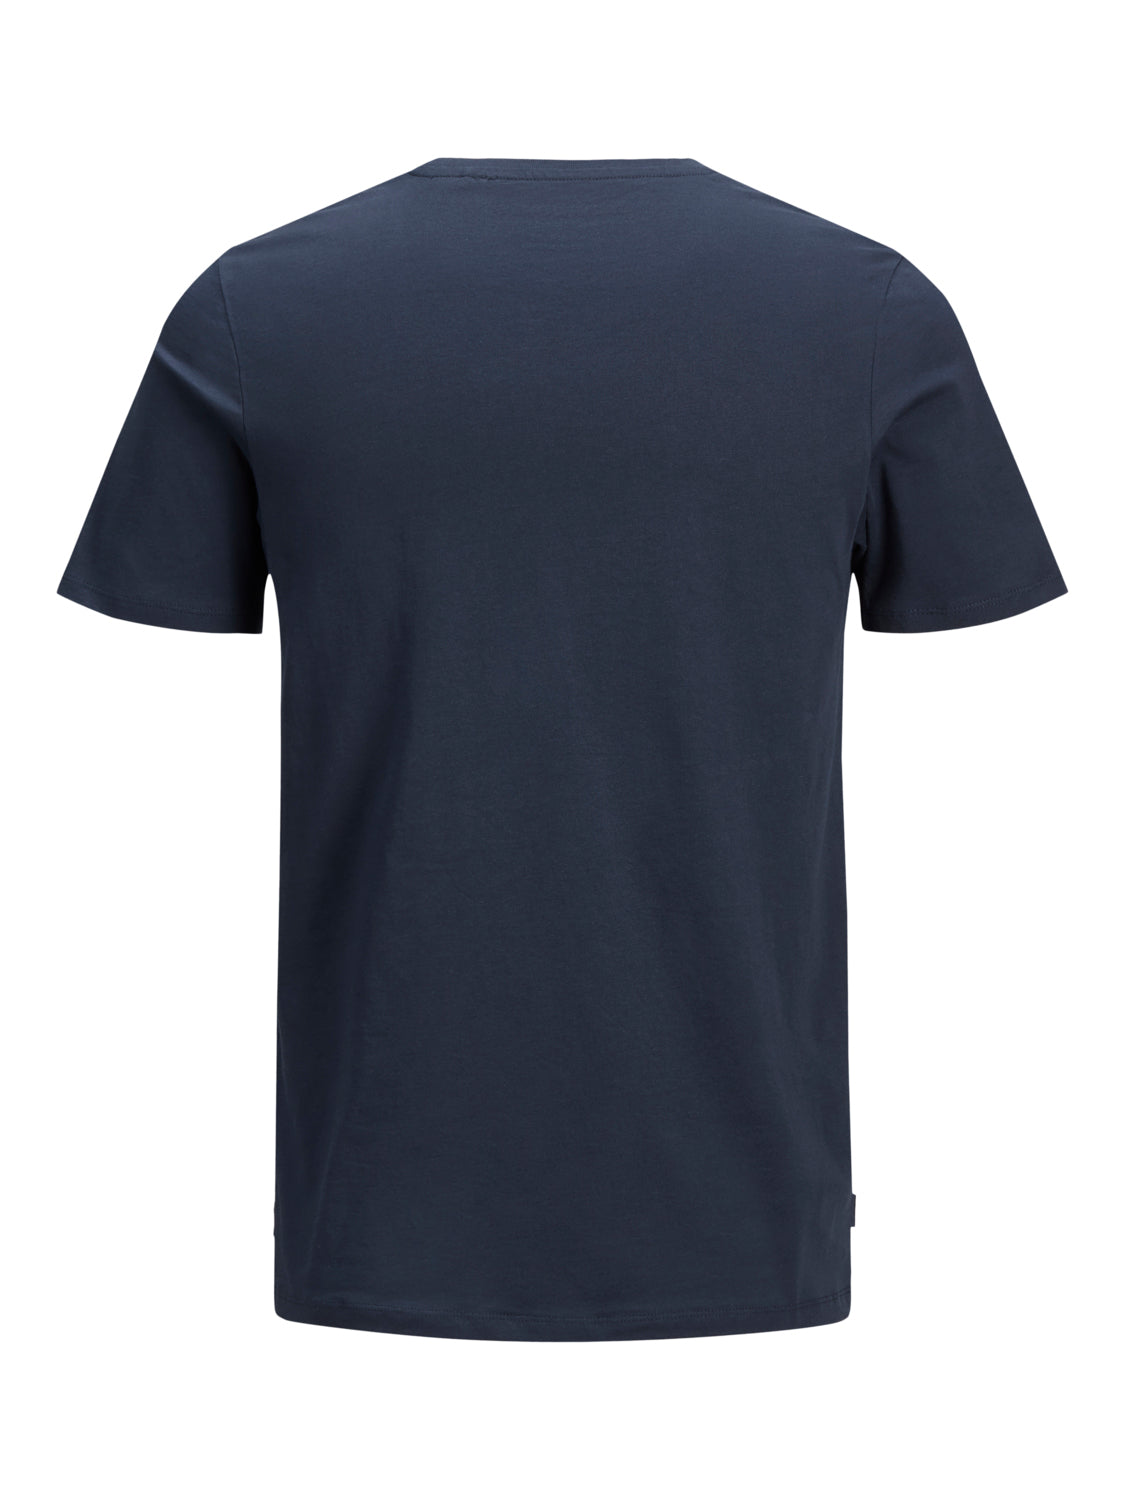 Camiseta básica manga corta azul marino - JJEORGANIC